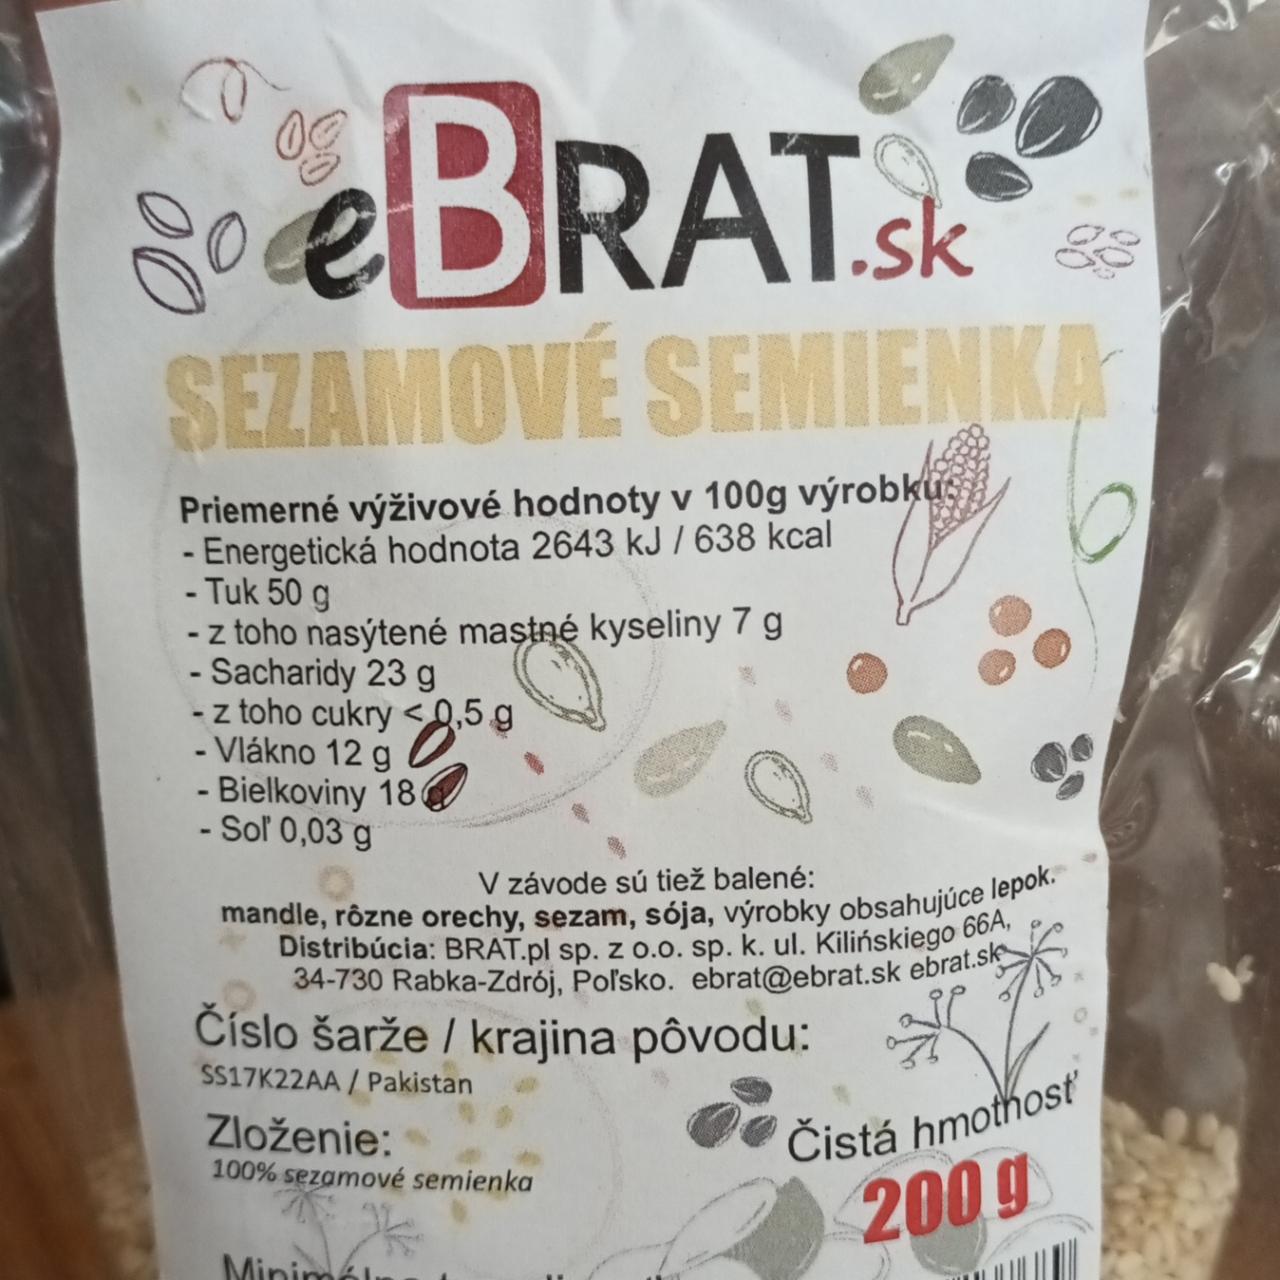 Fotografie - Sezamové semienka eBrat.sk